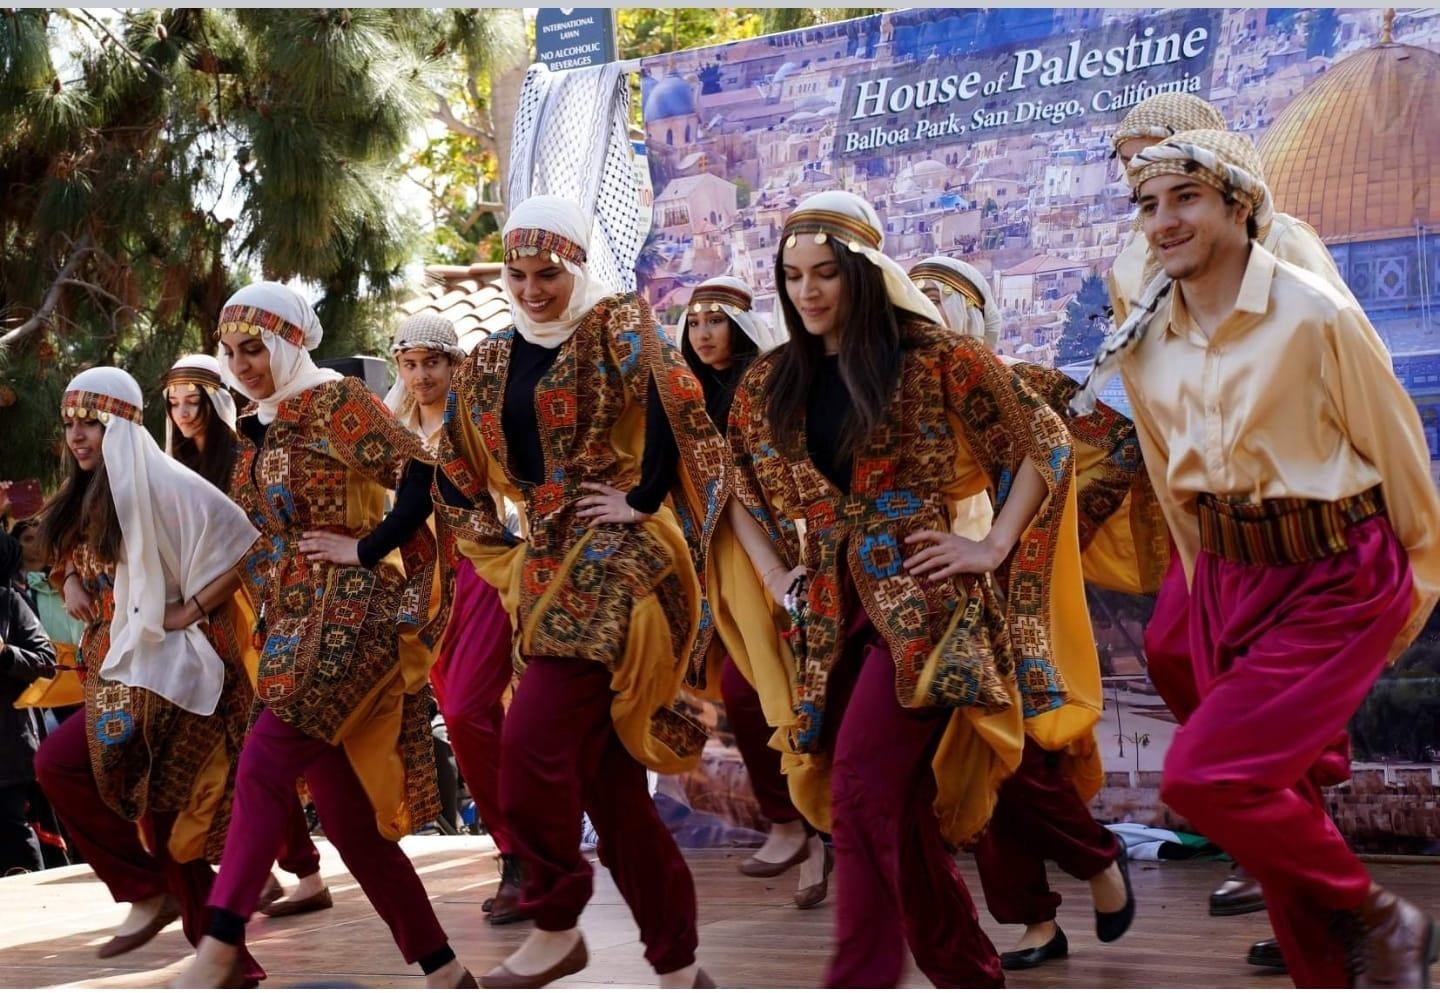 فعالية للاحتفال بالتراث والثقافة الفلسطينيّة في كاليفورنيا الأمريكيّة